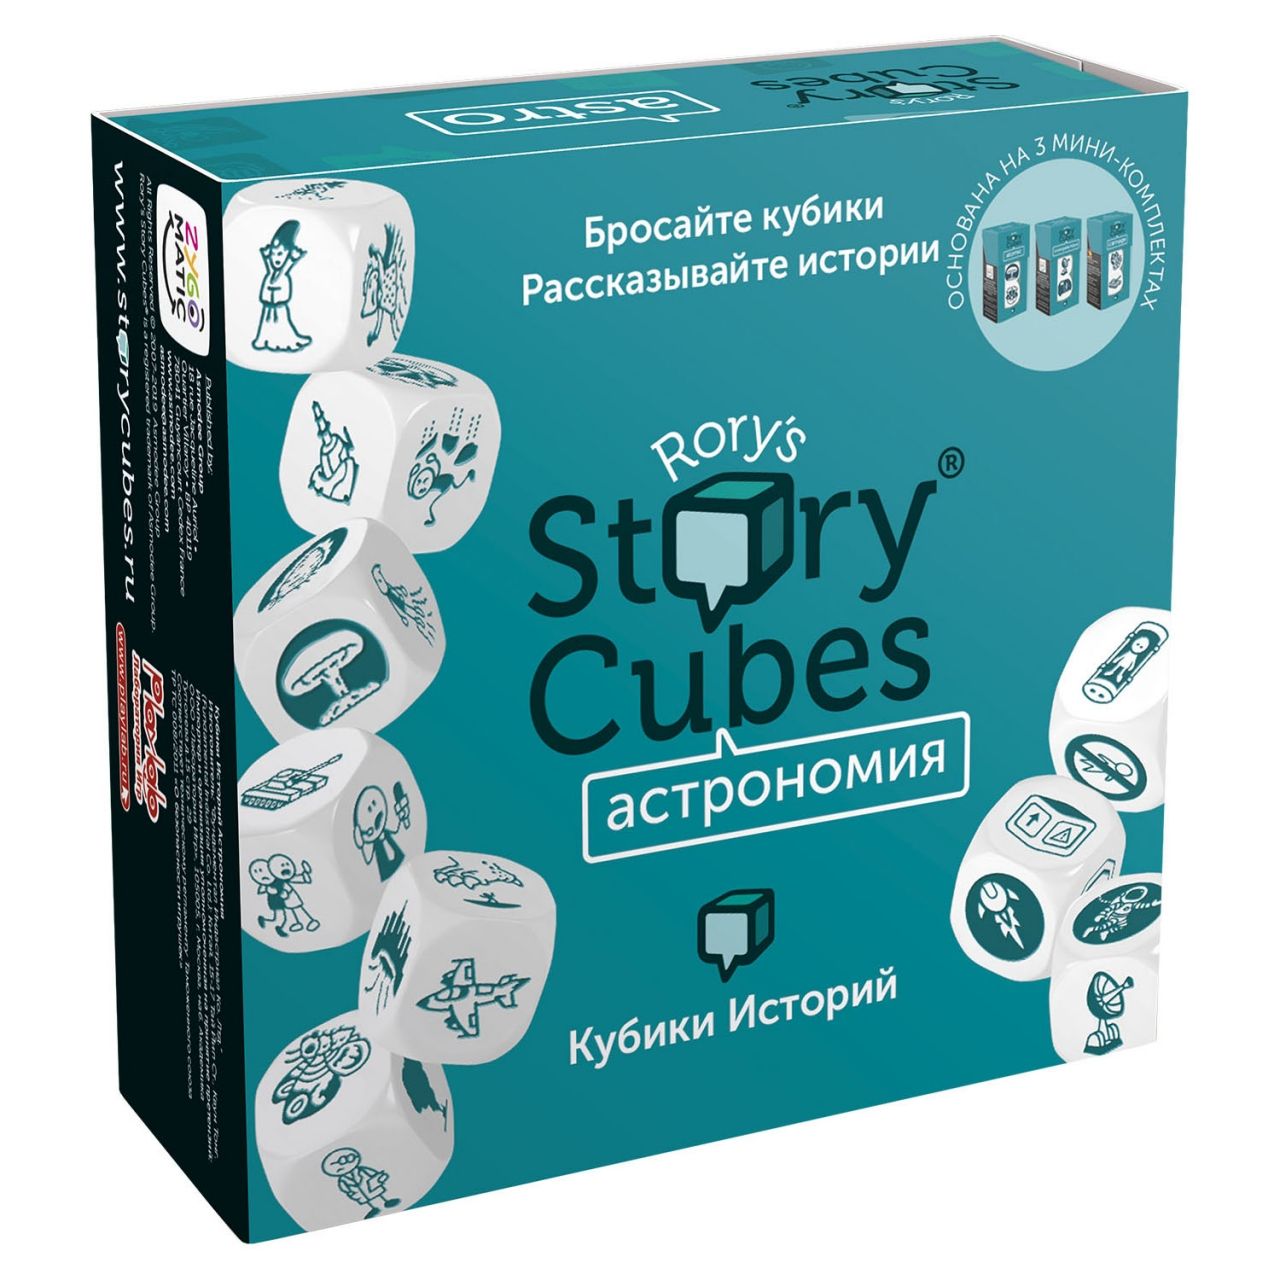 Настольная игра RORYS STORY CUBES RSC31 кубики историй Астрономия игра кубики историй действия